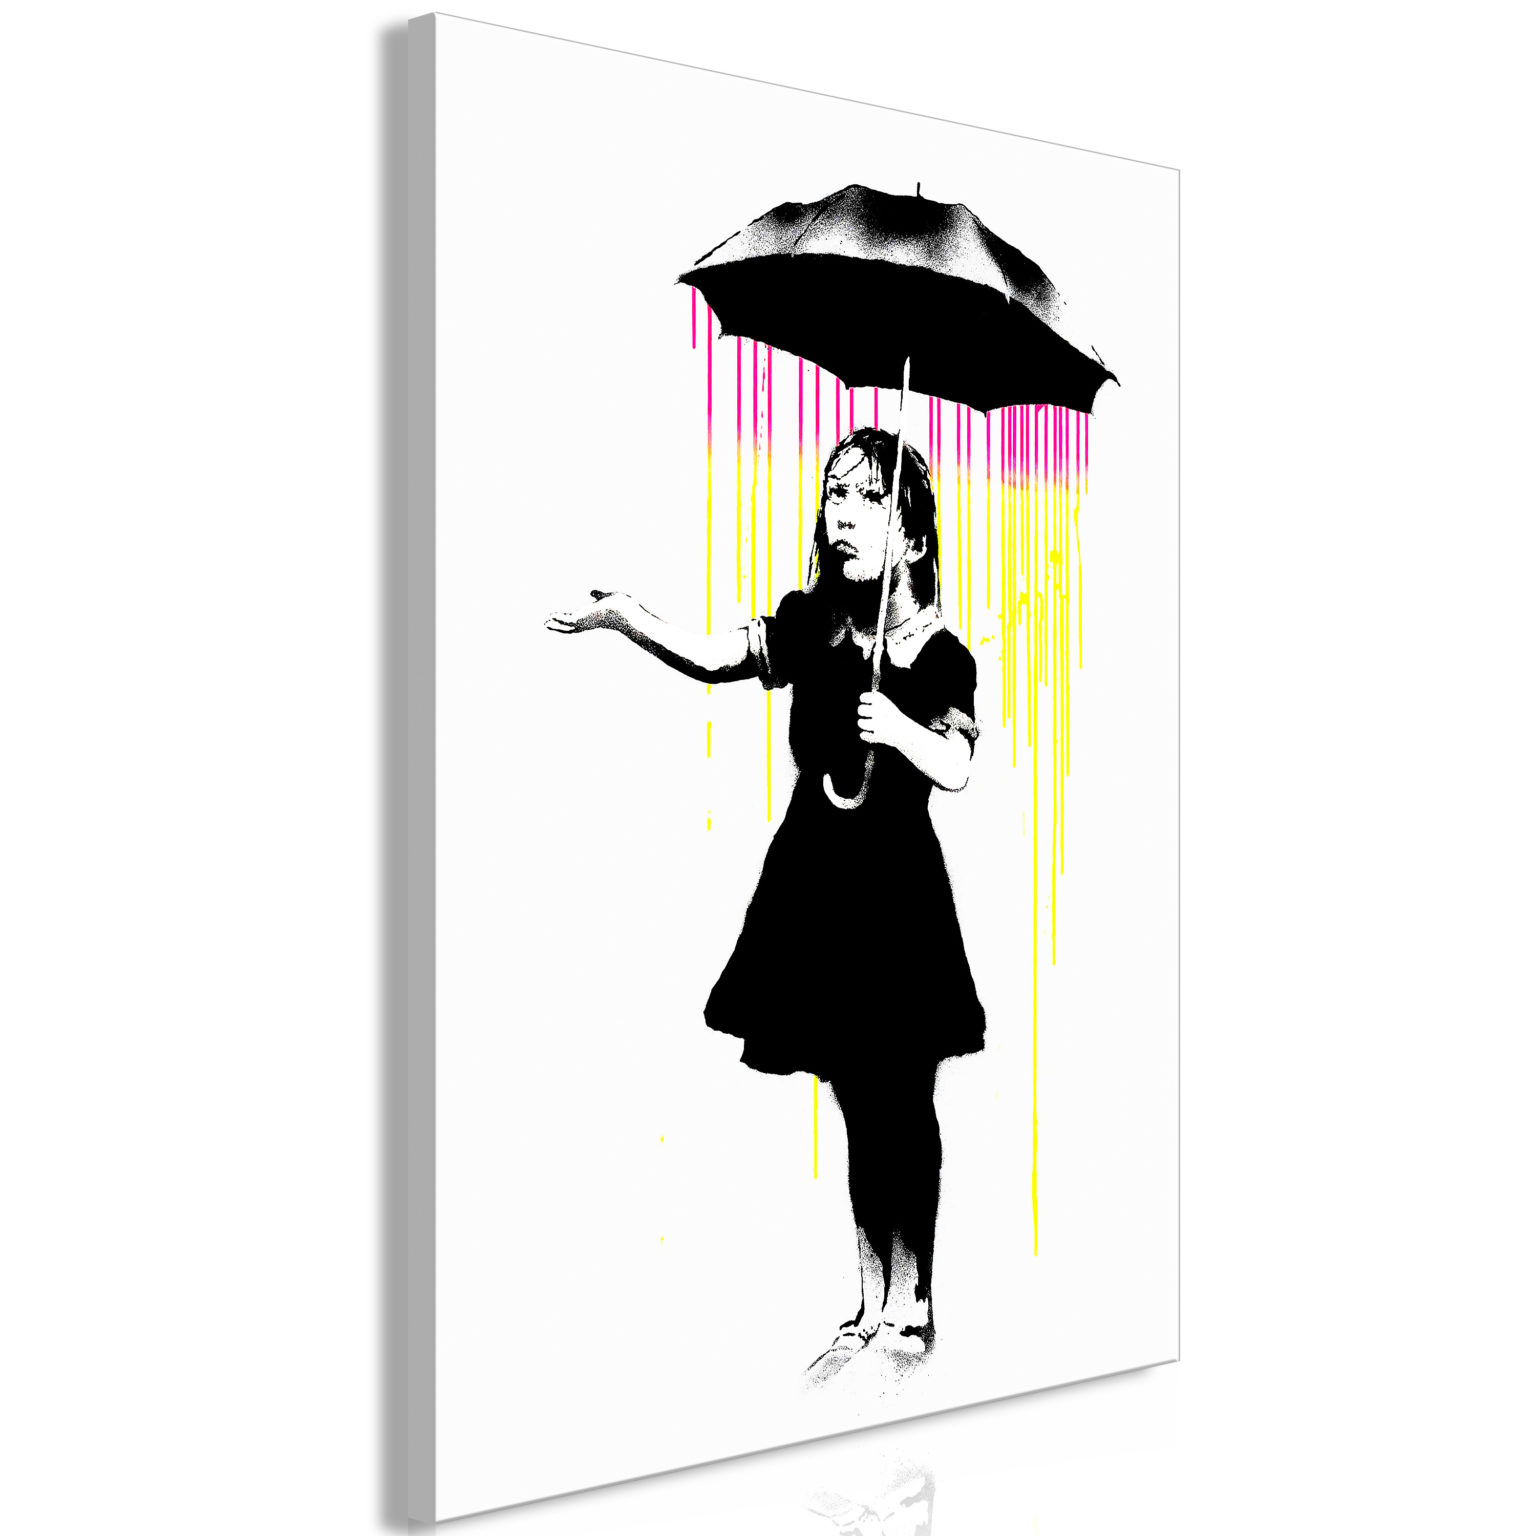 Tableau - Girl with Umbrella (1 Part) Vertical fait partie des tableaux murales de la collection de worldofwomen découvrez ce magnifique tableau exclusif chez nous